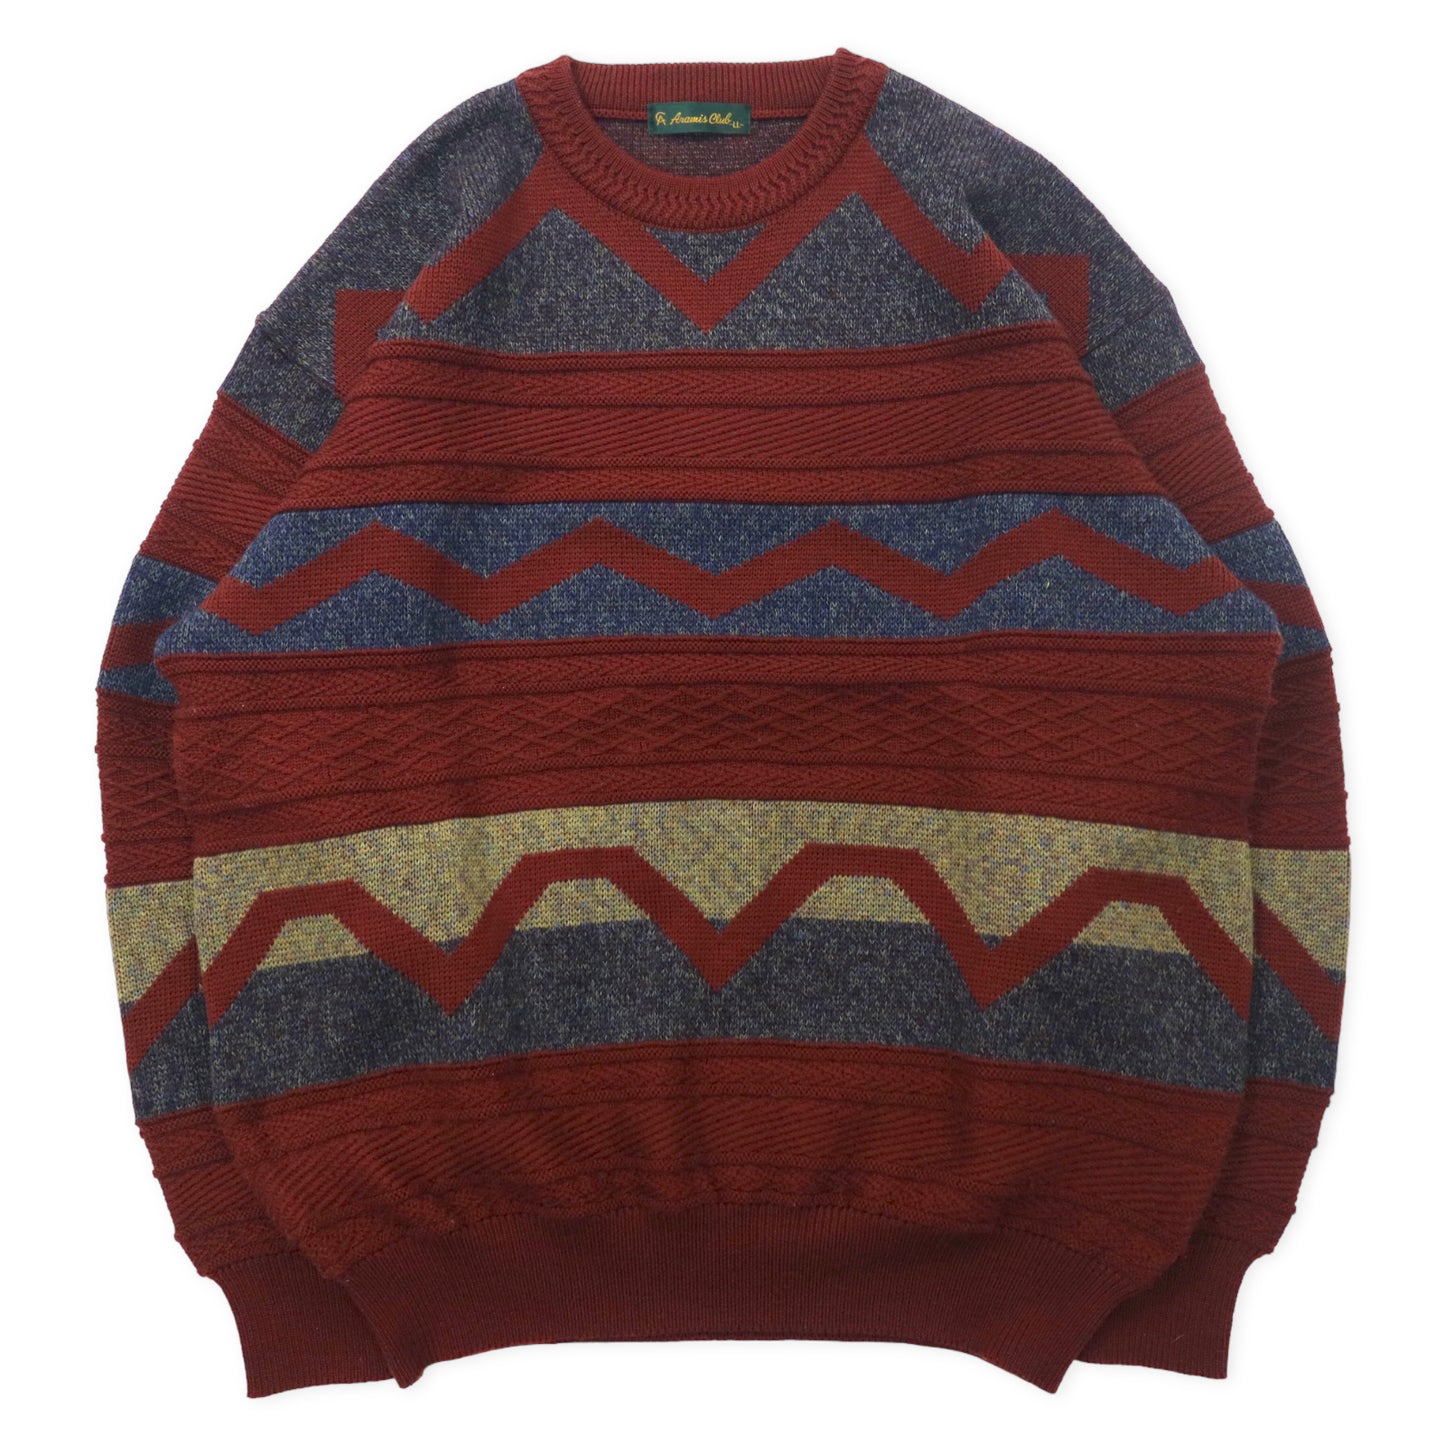 ARAMIS CLUB Alan Knit Sweater LL Brown Patterned 3D Wool Big Size 